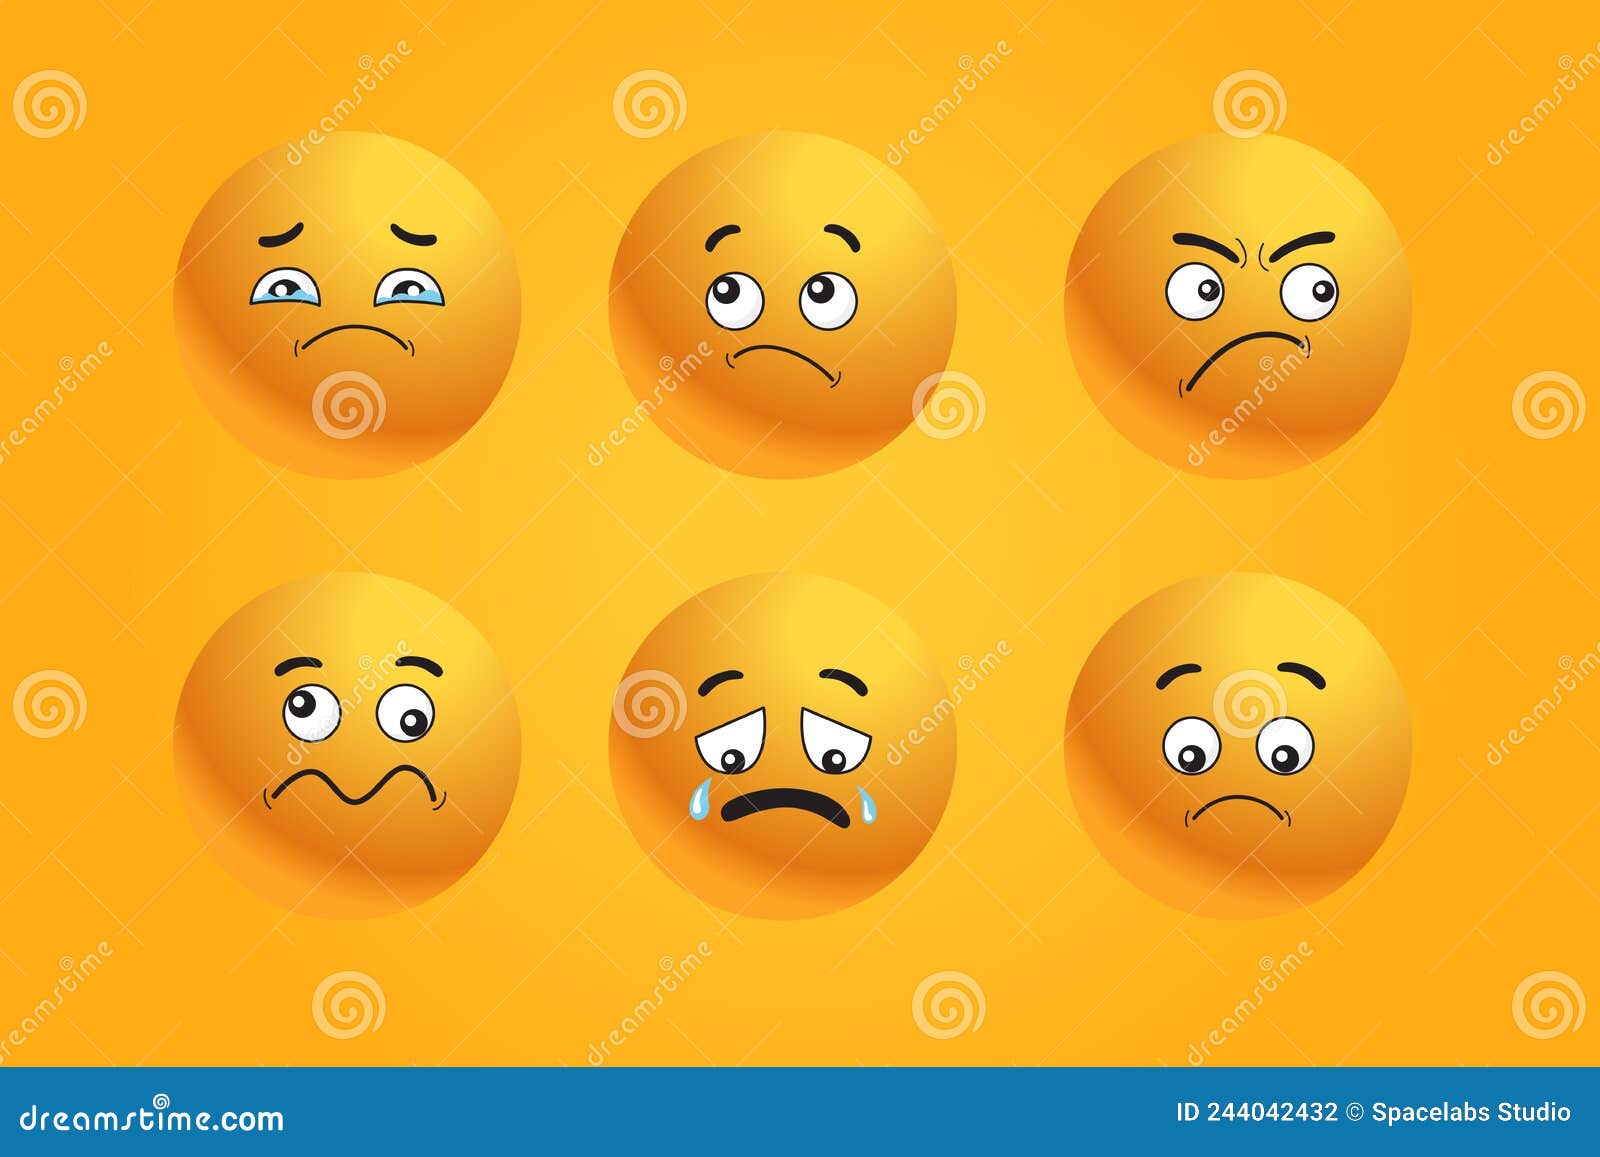 smiley emoticon icon yellow expresion face emoji